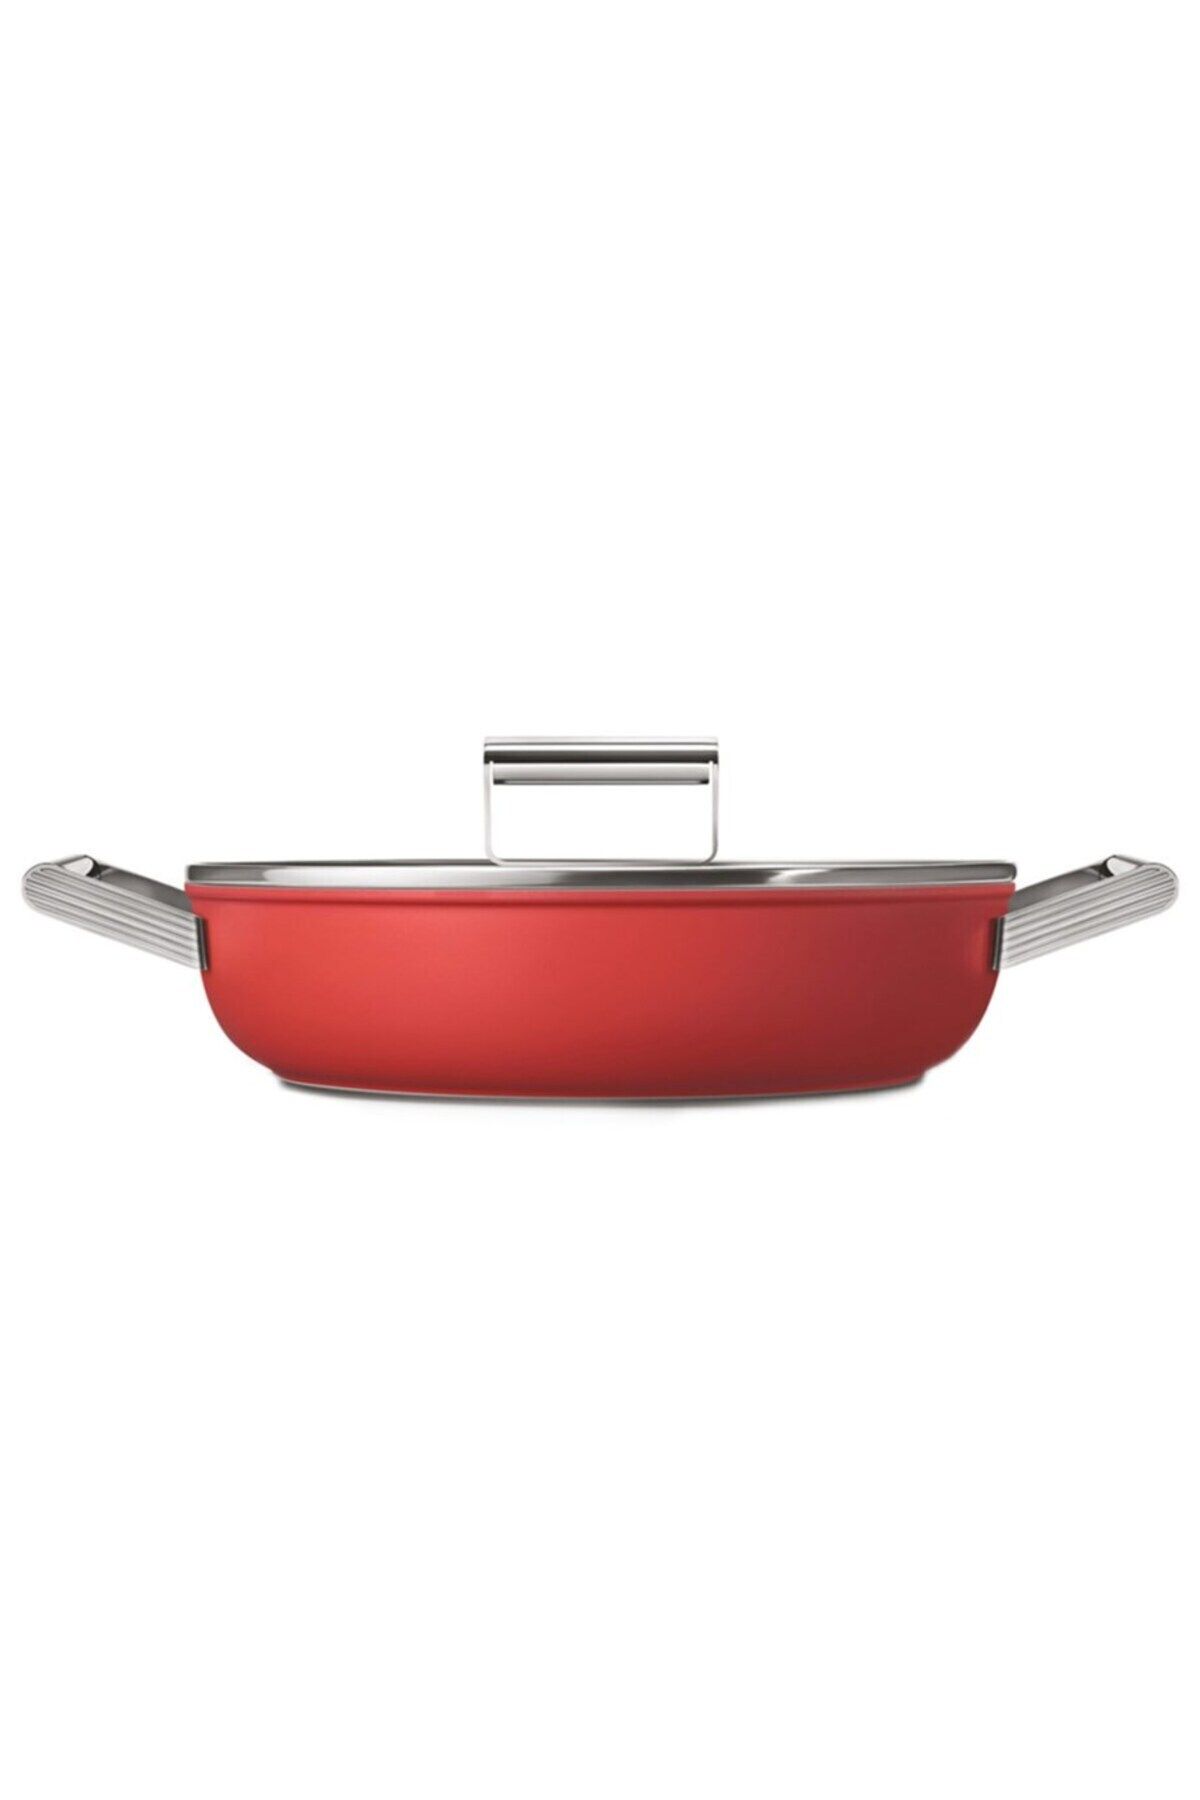 Smeg Cookware 50's Style Kırmızı Pilav Tenceresi Cam Kapaklı 28 Cm